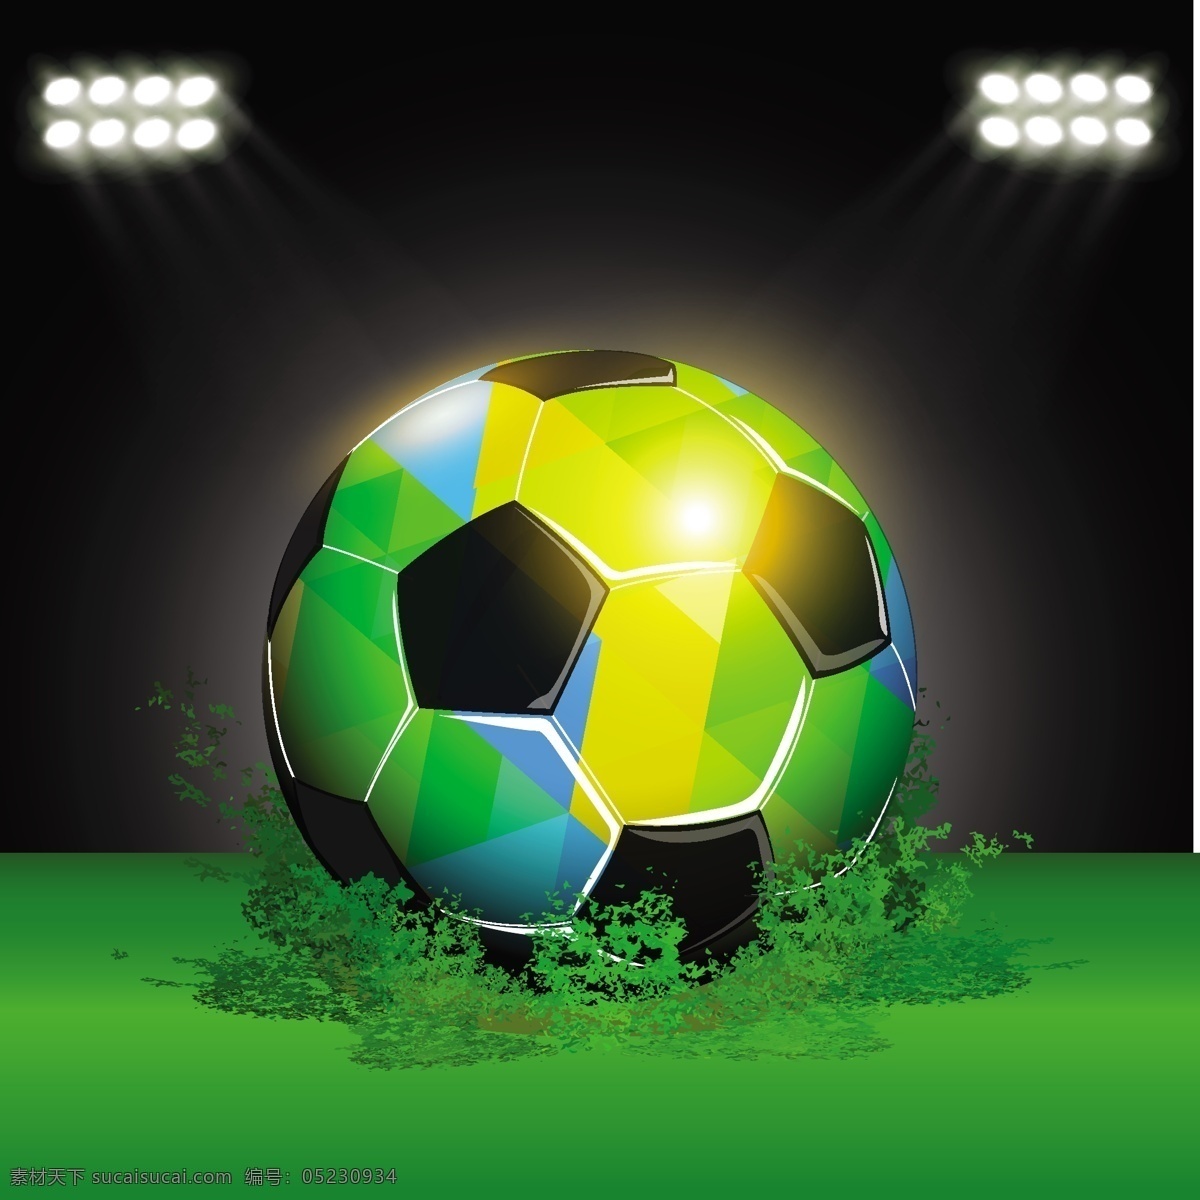 巴西世界杯 巴西足球 背景 背景设计 矢量 海报元素 矢量足球 世界杯 足球矢量素材 足球模板下载 足球 足球比赛 football 足球海报 足球元素 足球海报元素 矢量图 日常生活